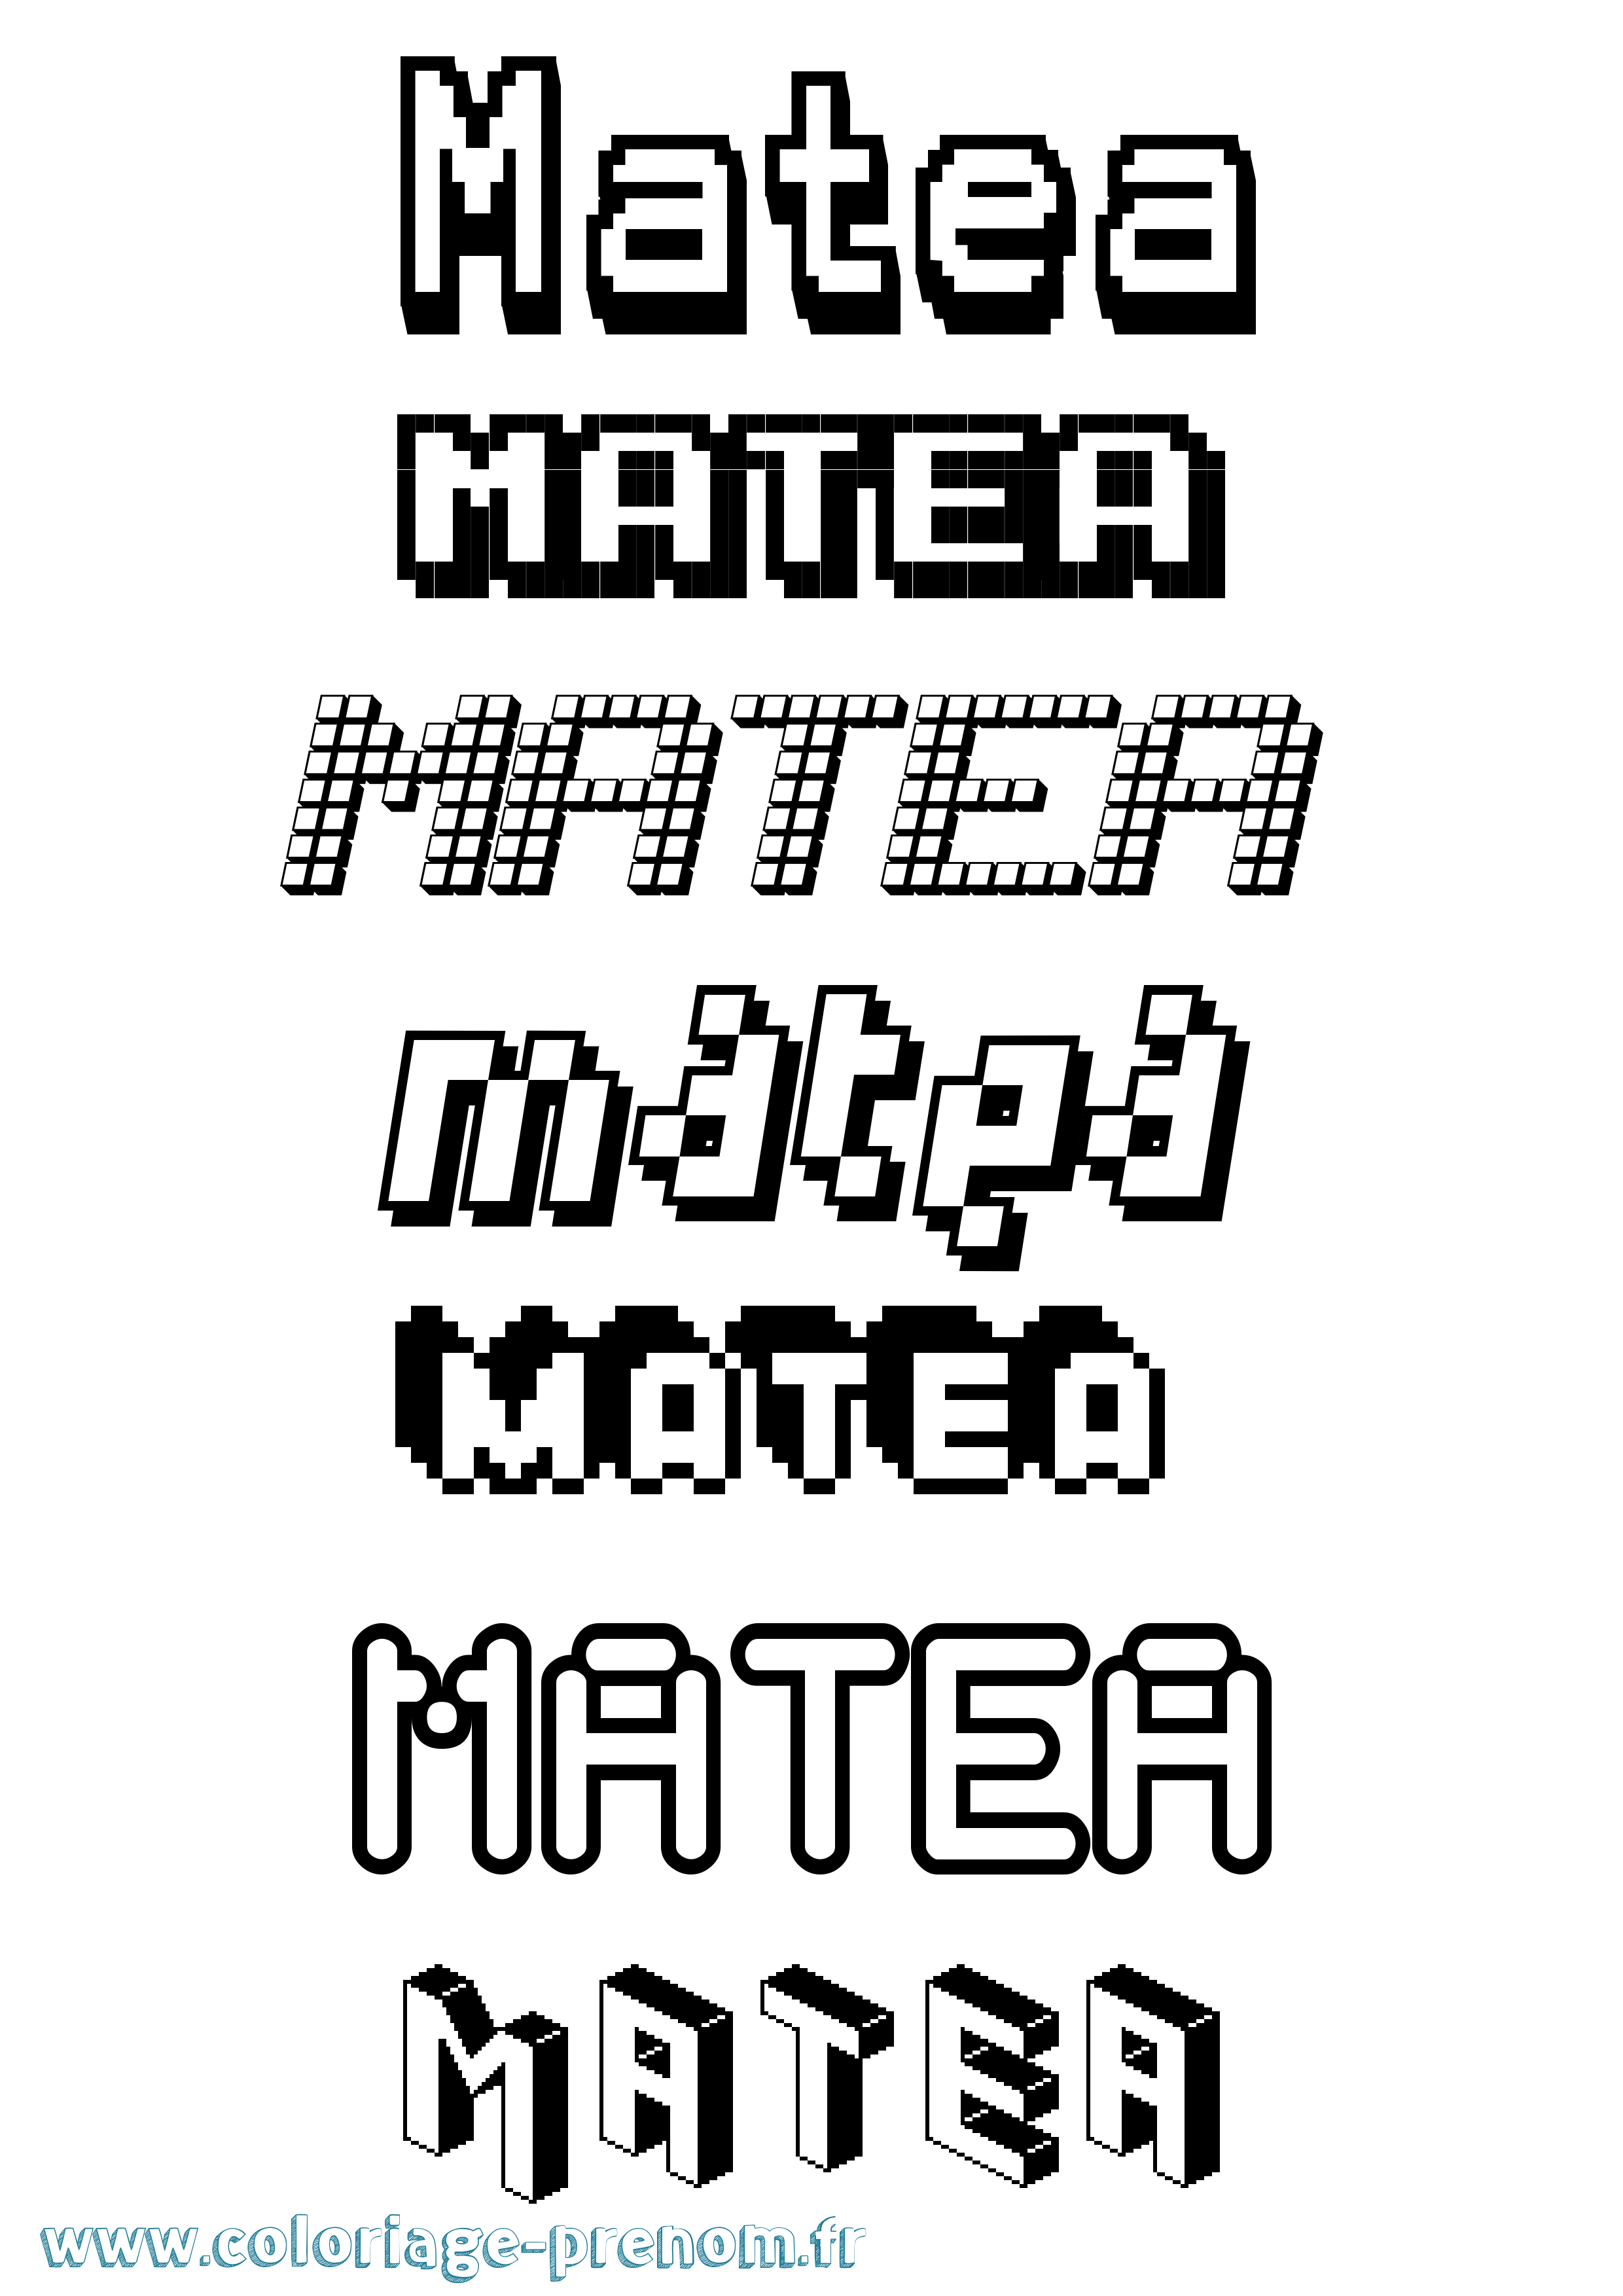 Coloriage prénom Matea Pixel